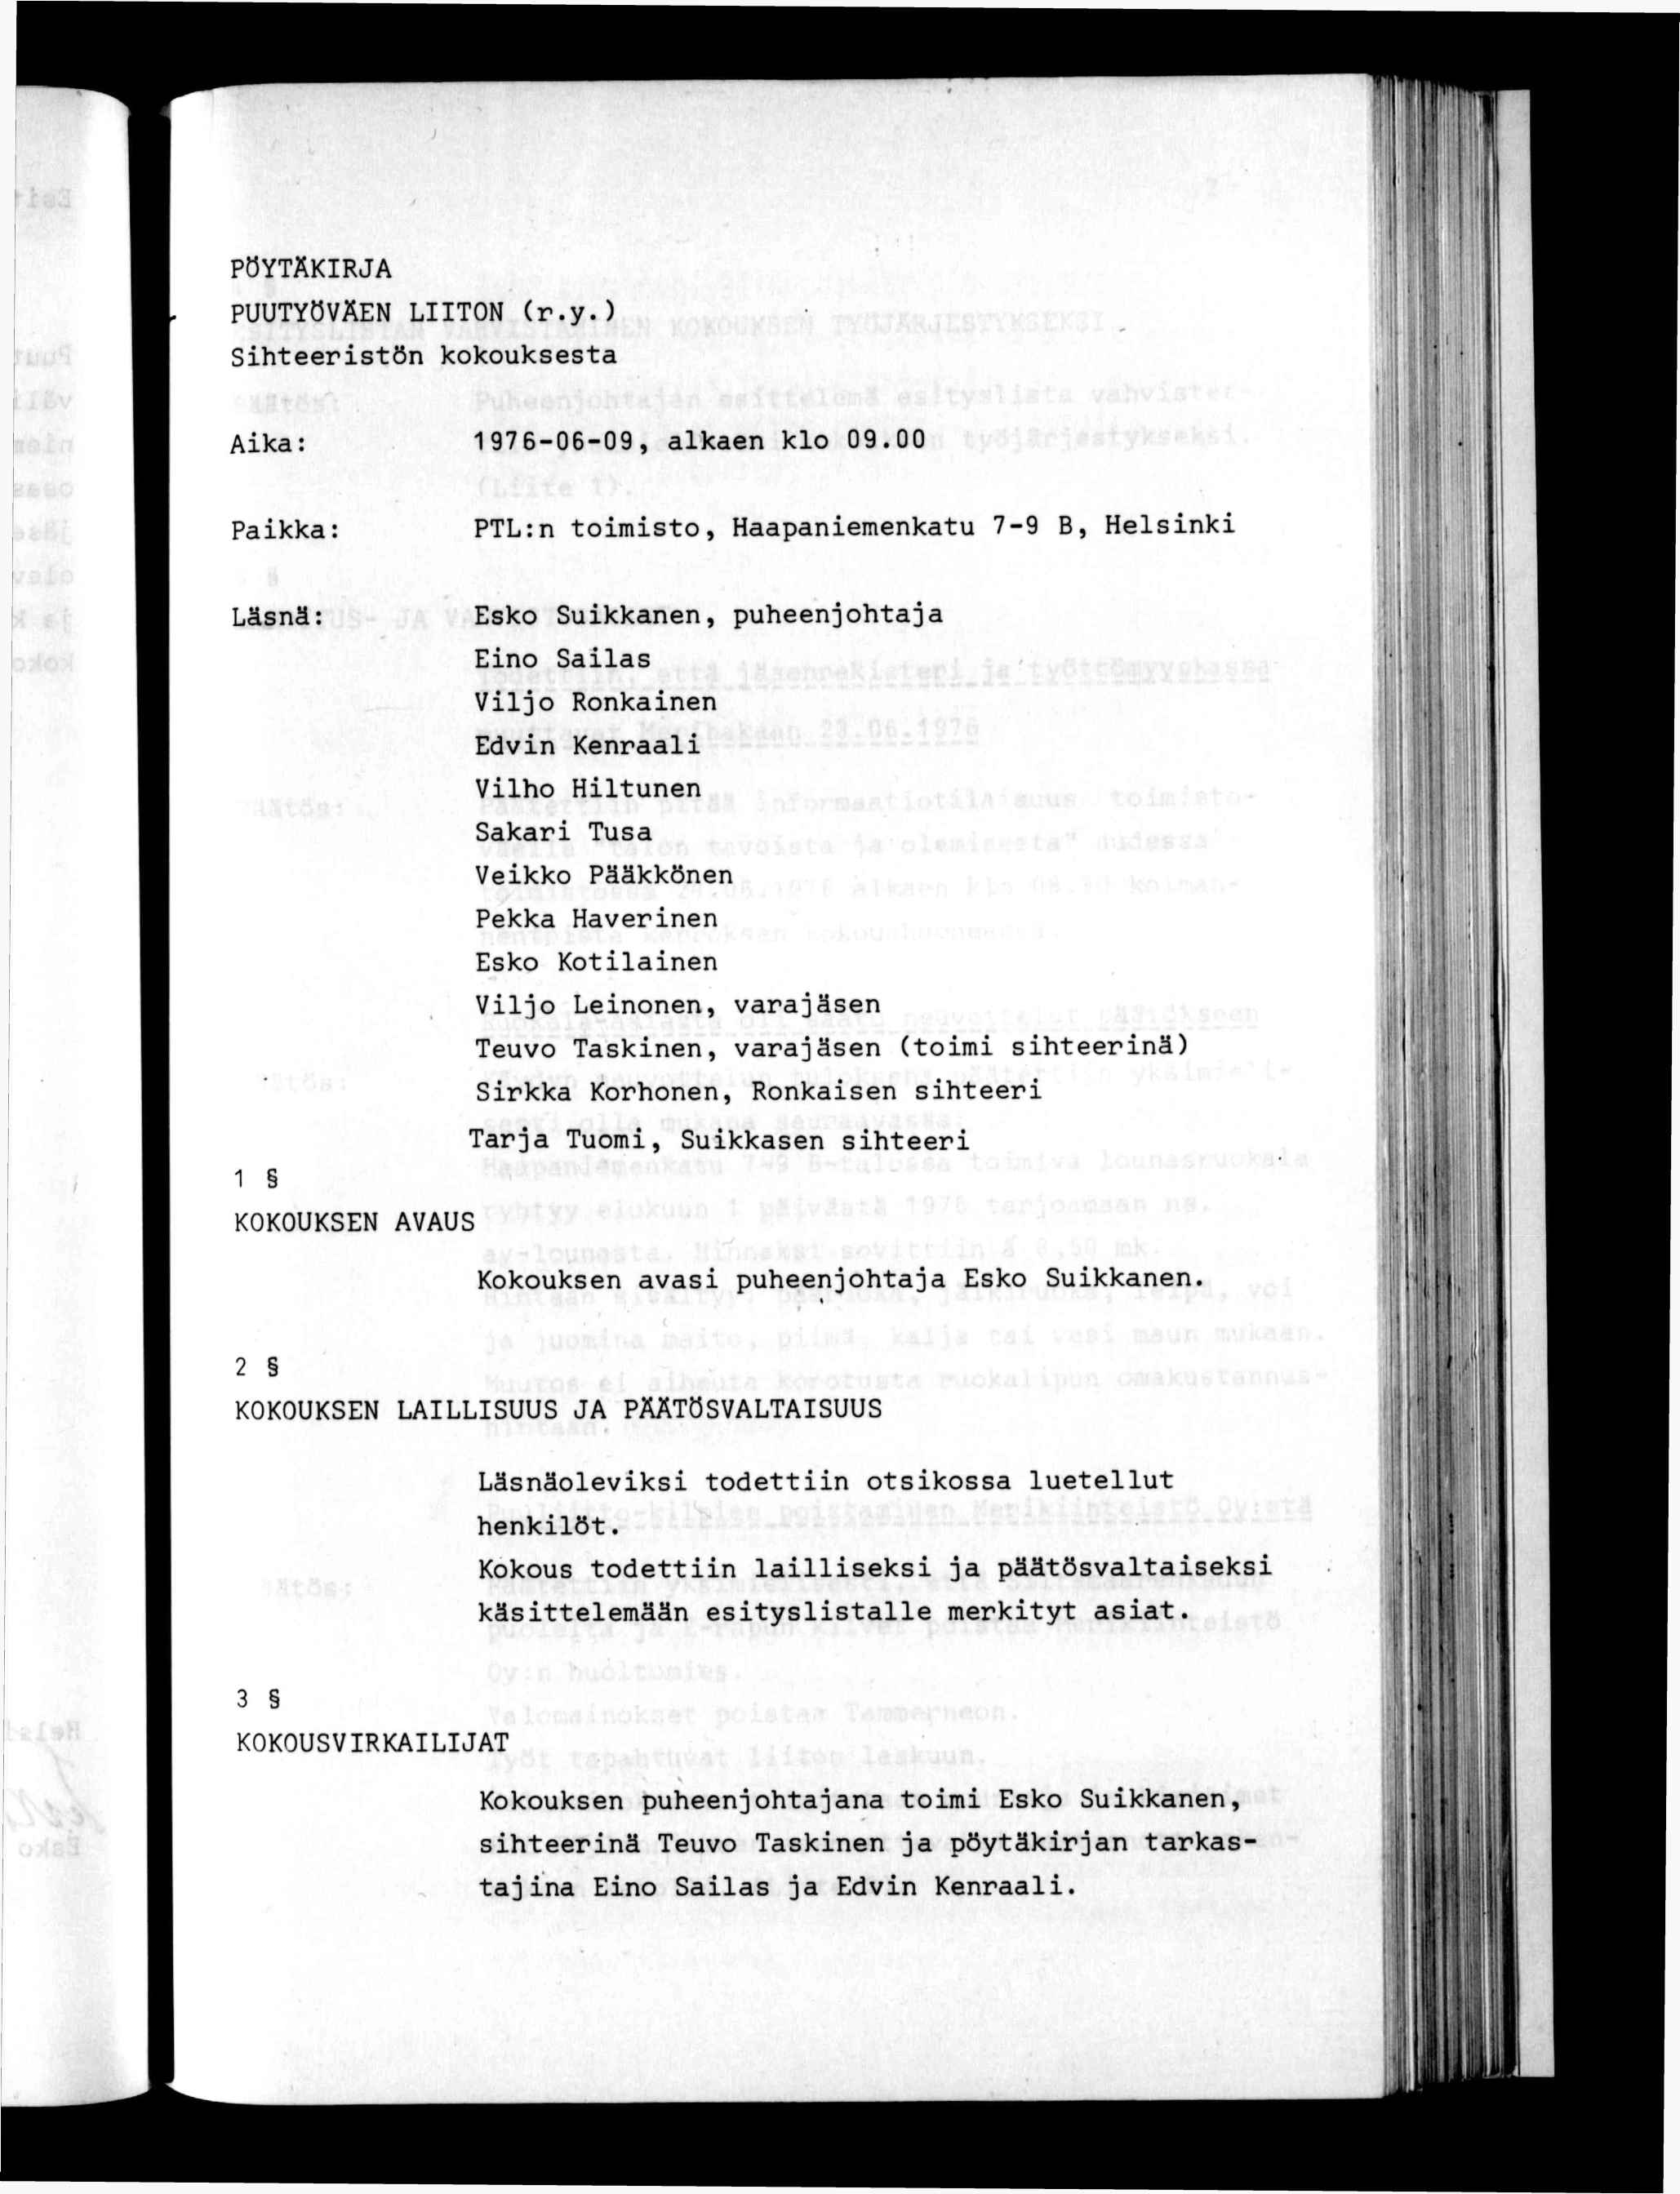 PÖYTÄKRJA PUUTYÖVÄEN LTON (r.y.) Shteerstön kokouksesta t Aka: 1976-06-09, alkaen klo 09.